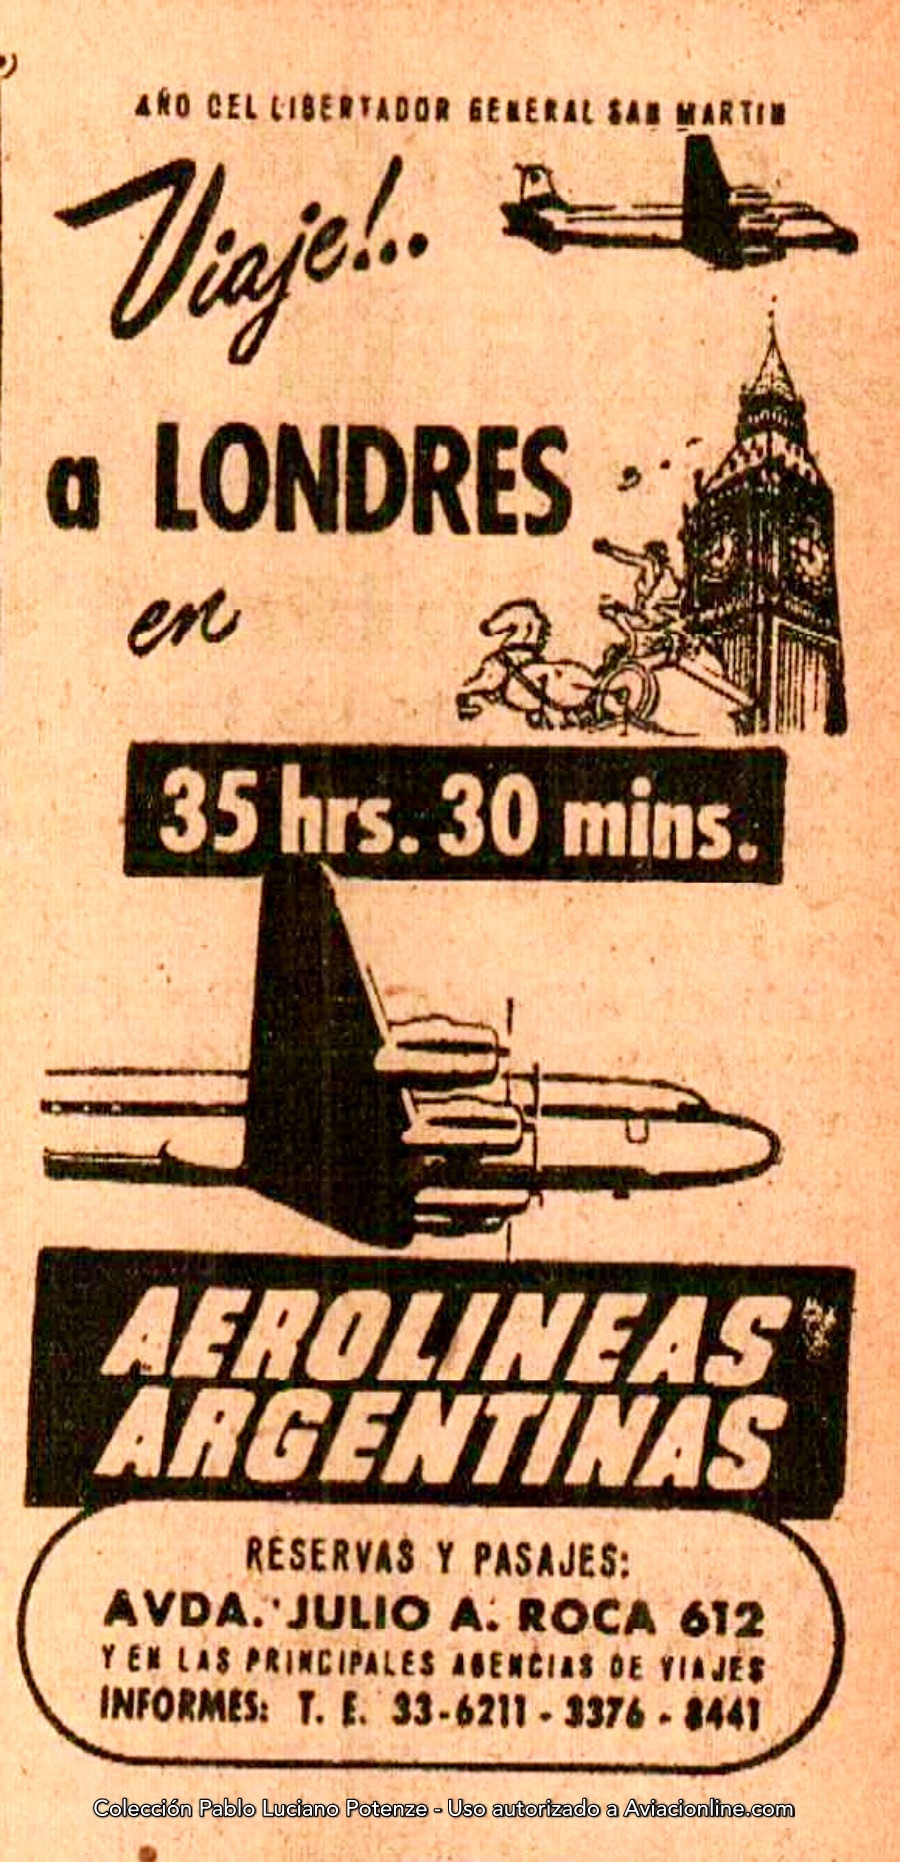 Aerolíneas-Argenitnas-1950-publicidades07